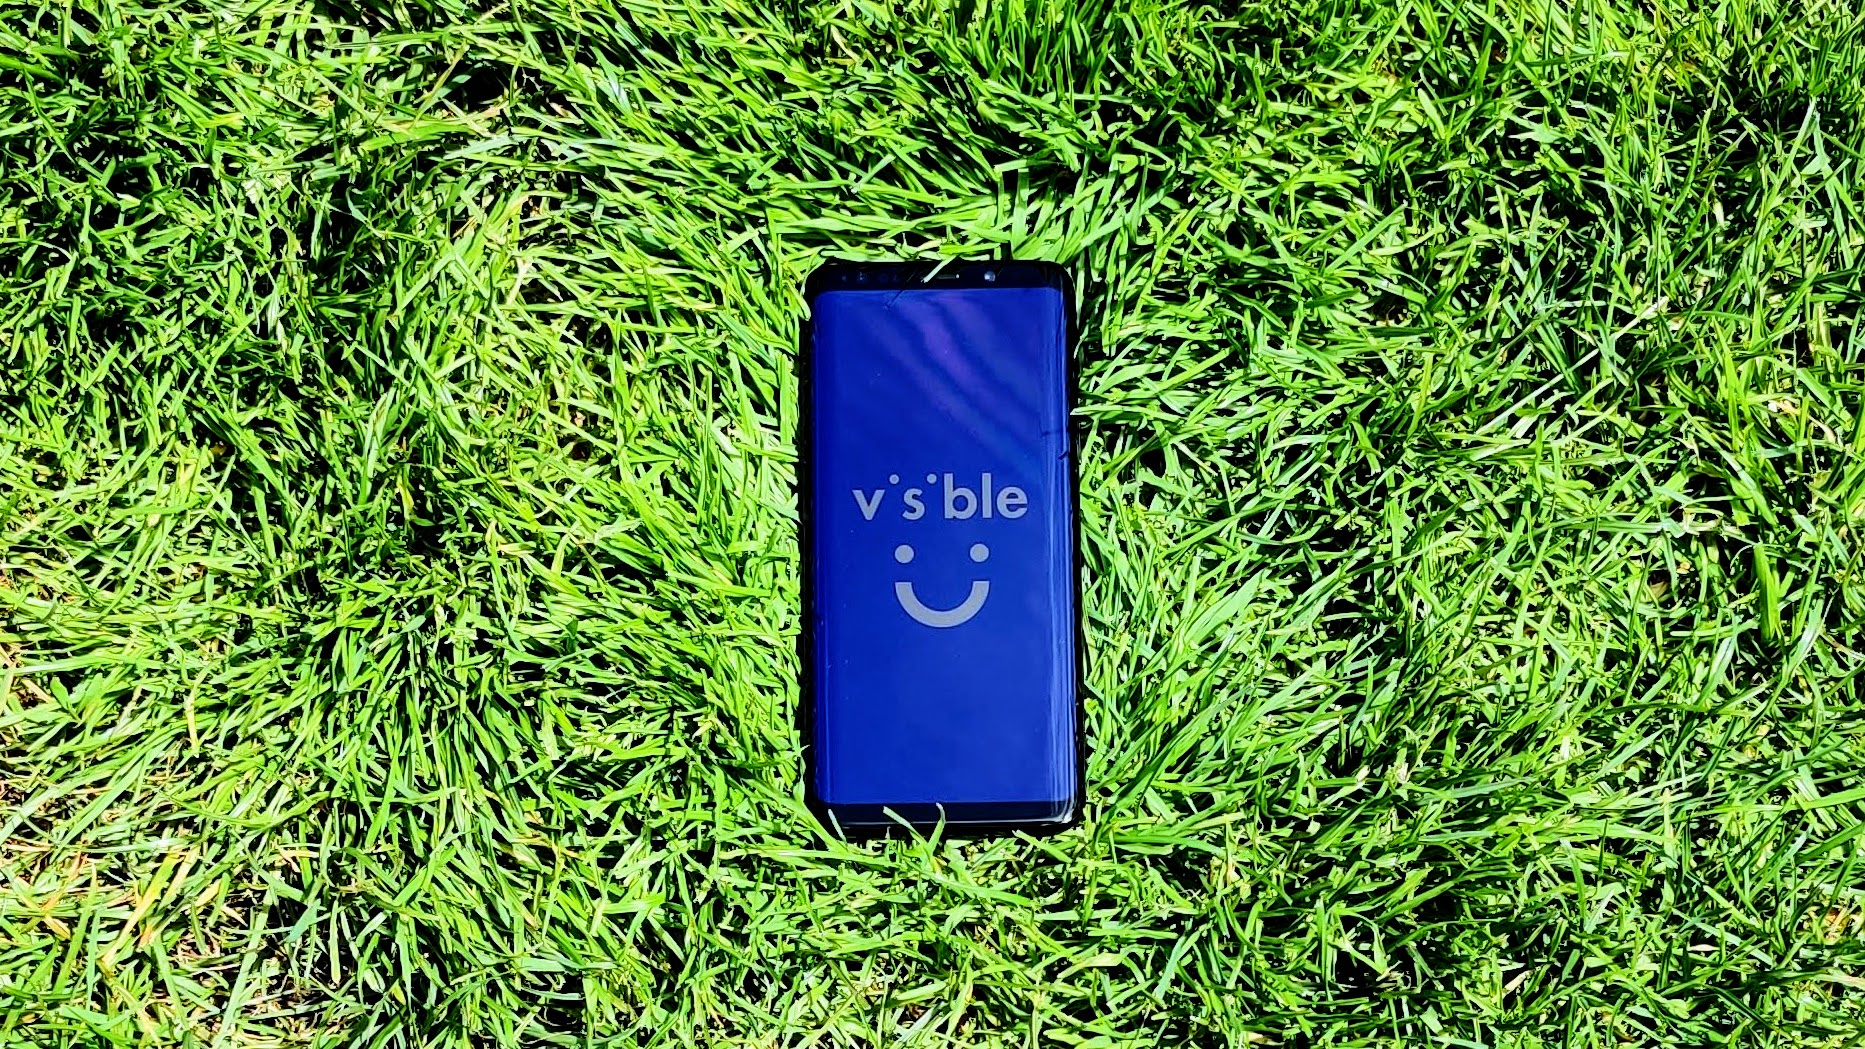 Samsung Galaxy S9 sur de l'herbe avec le logo Visible sur l'écran.